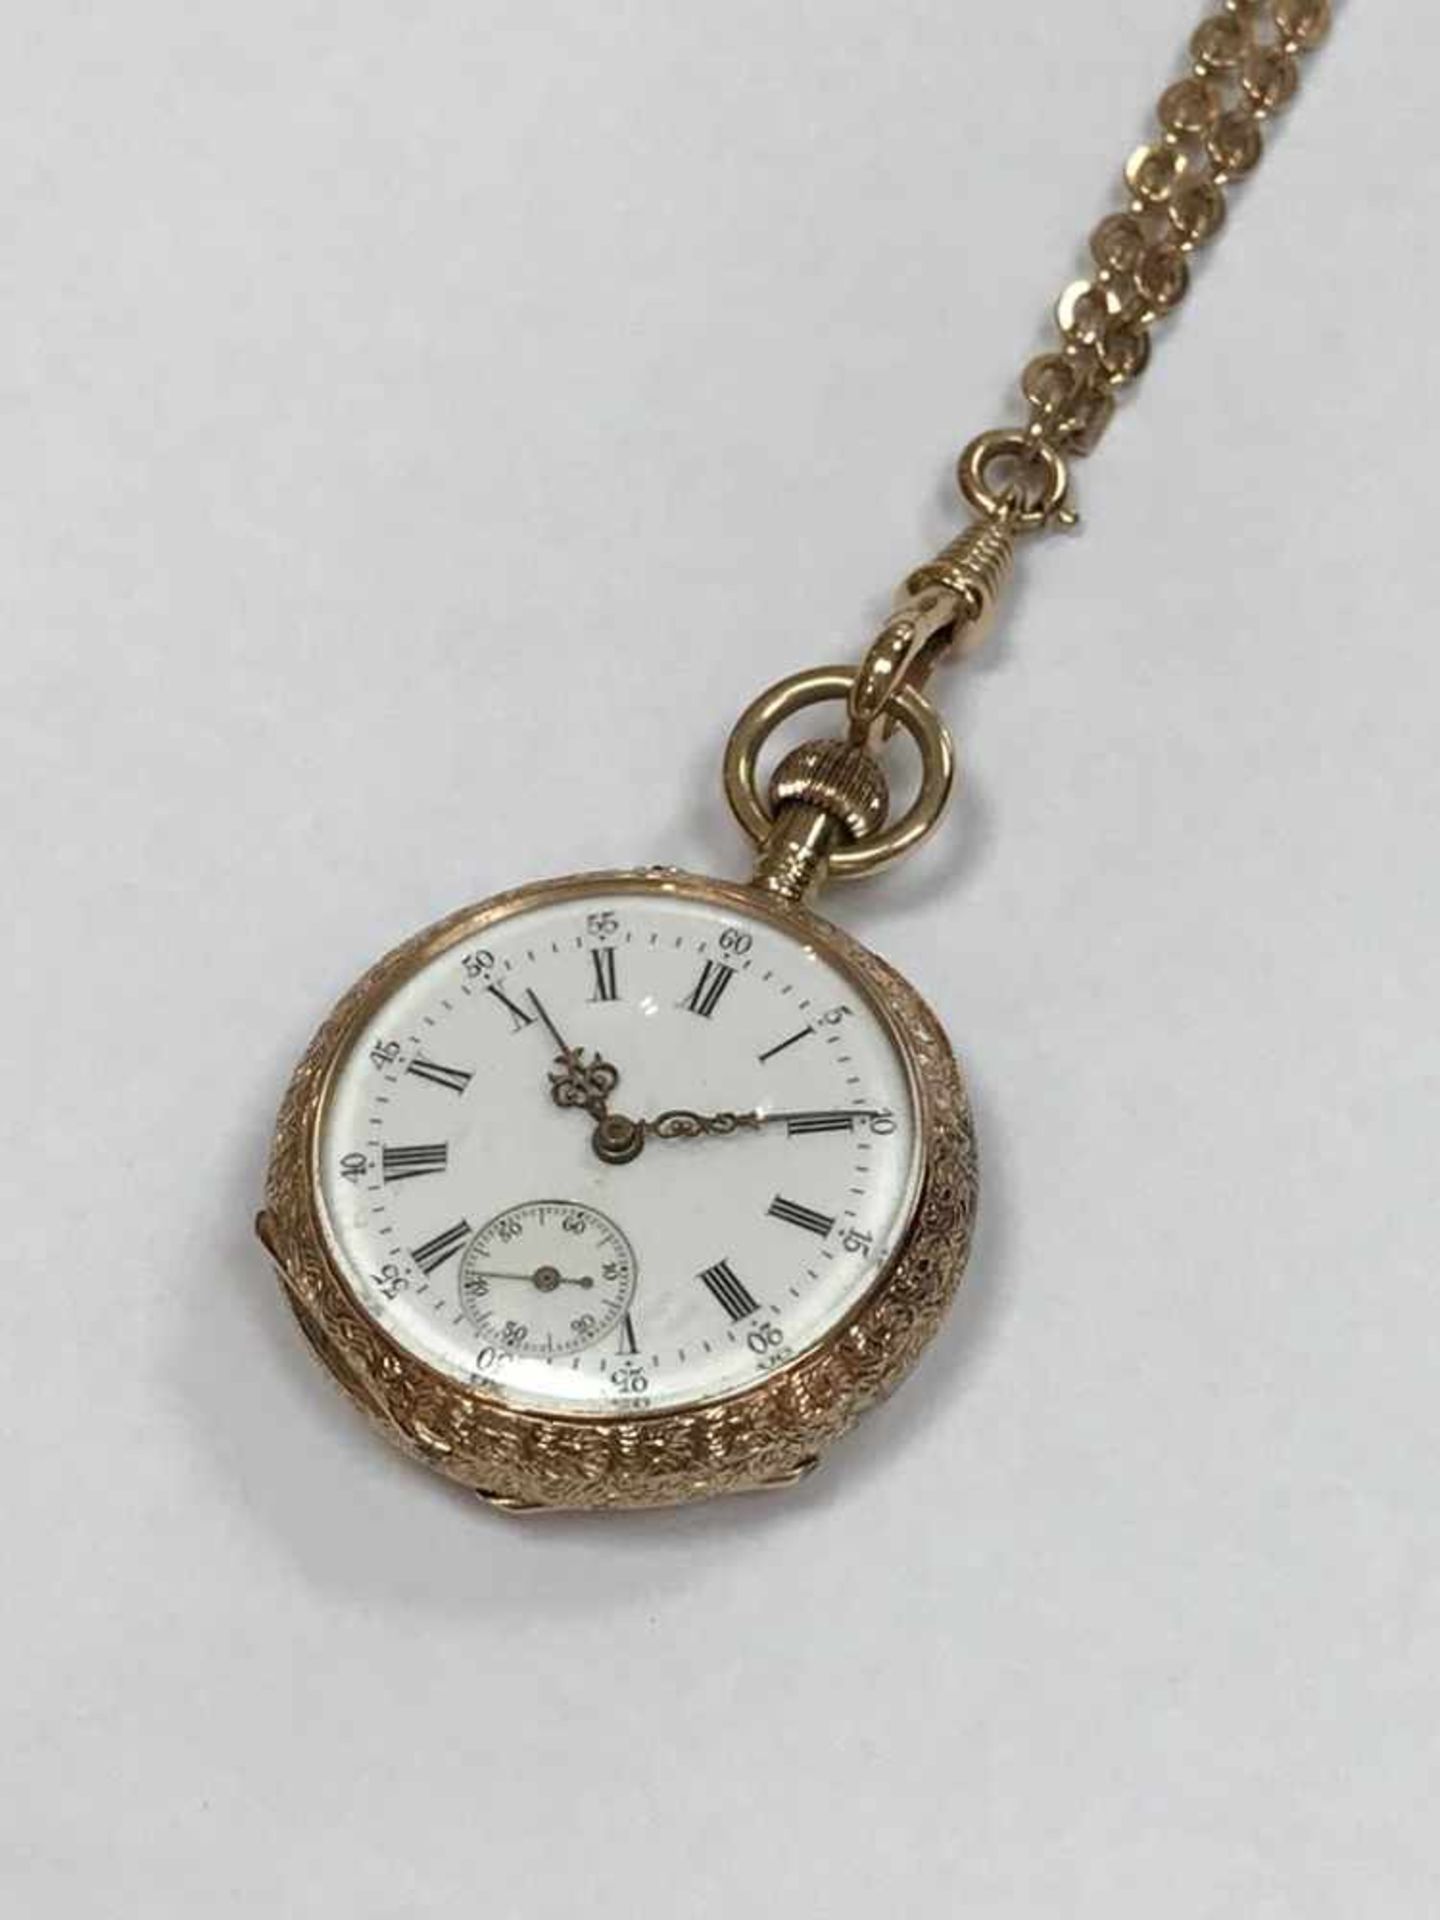 Gold Taschenuhr 585 "Bleienheuft Cöln a Rhein"Wohl Deutschland um 1880, Material: 585 Gold, Uhr